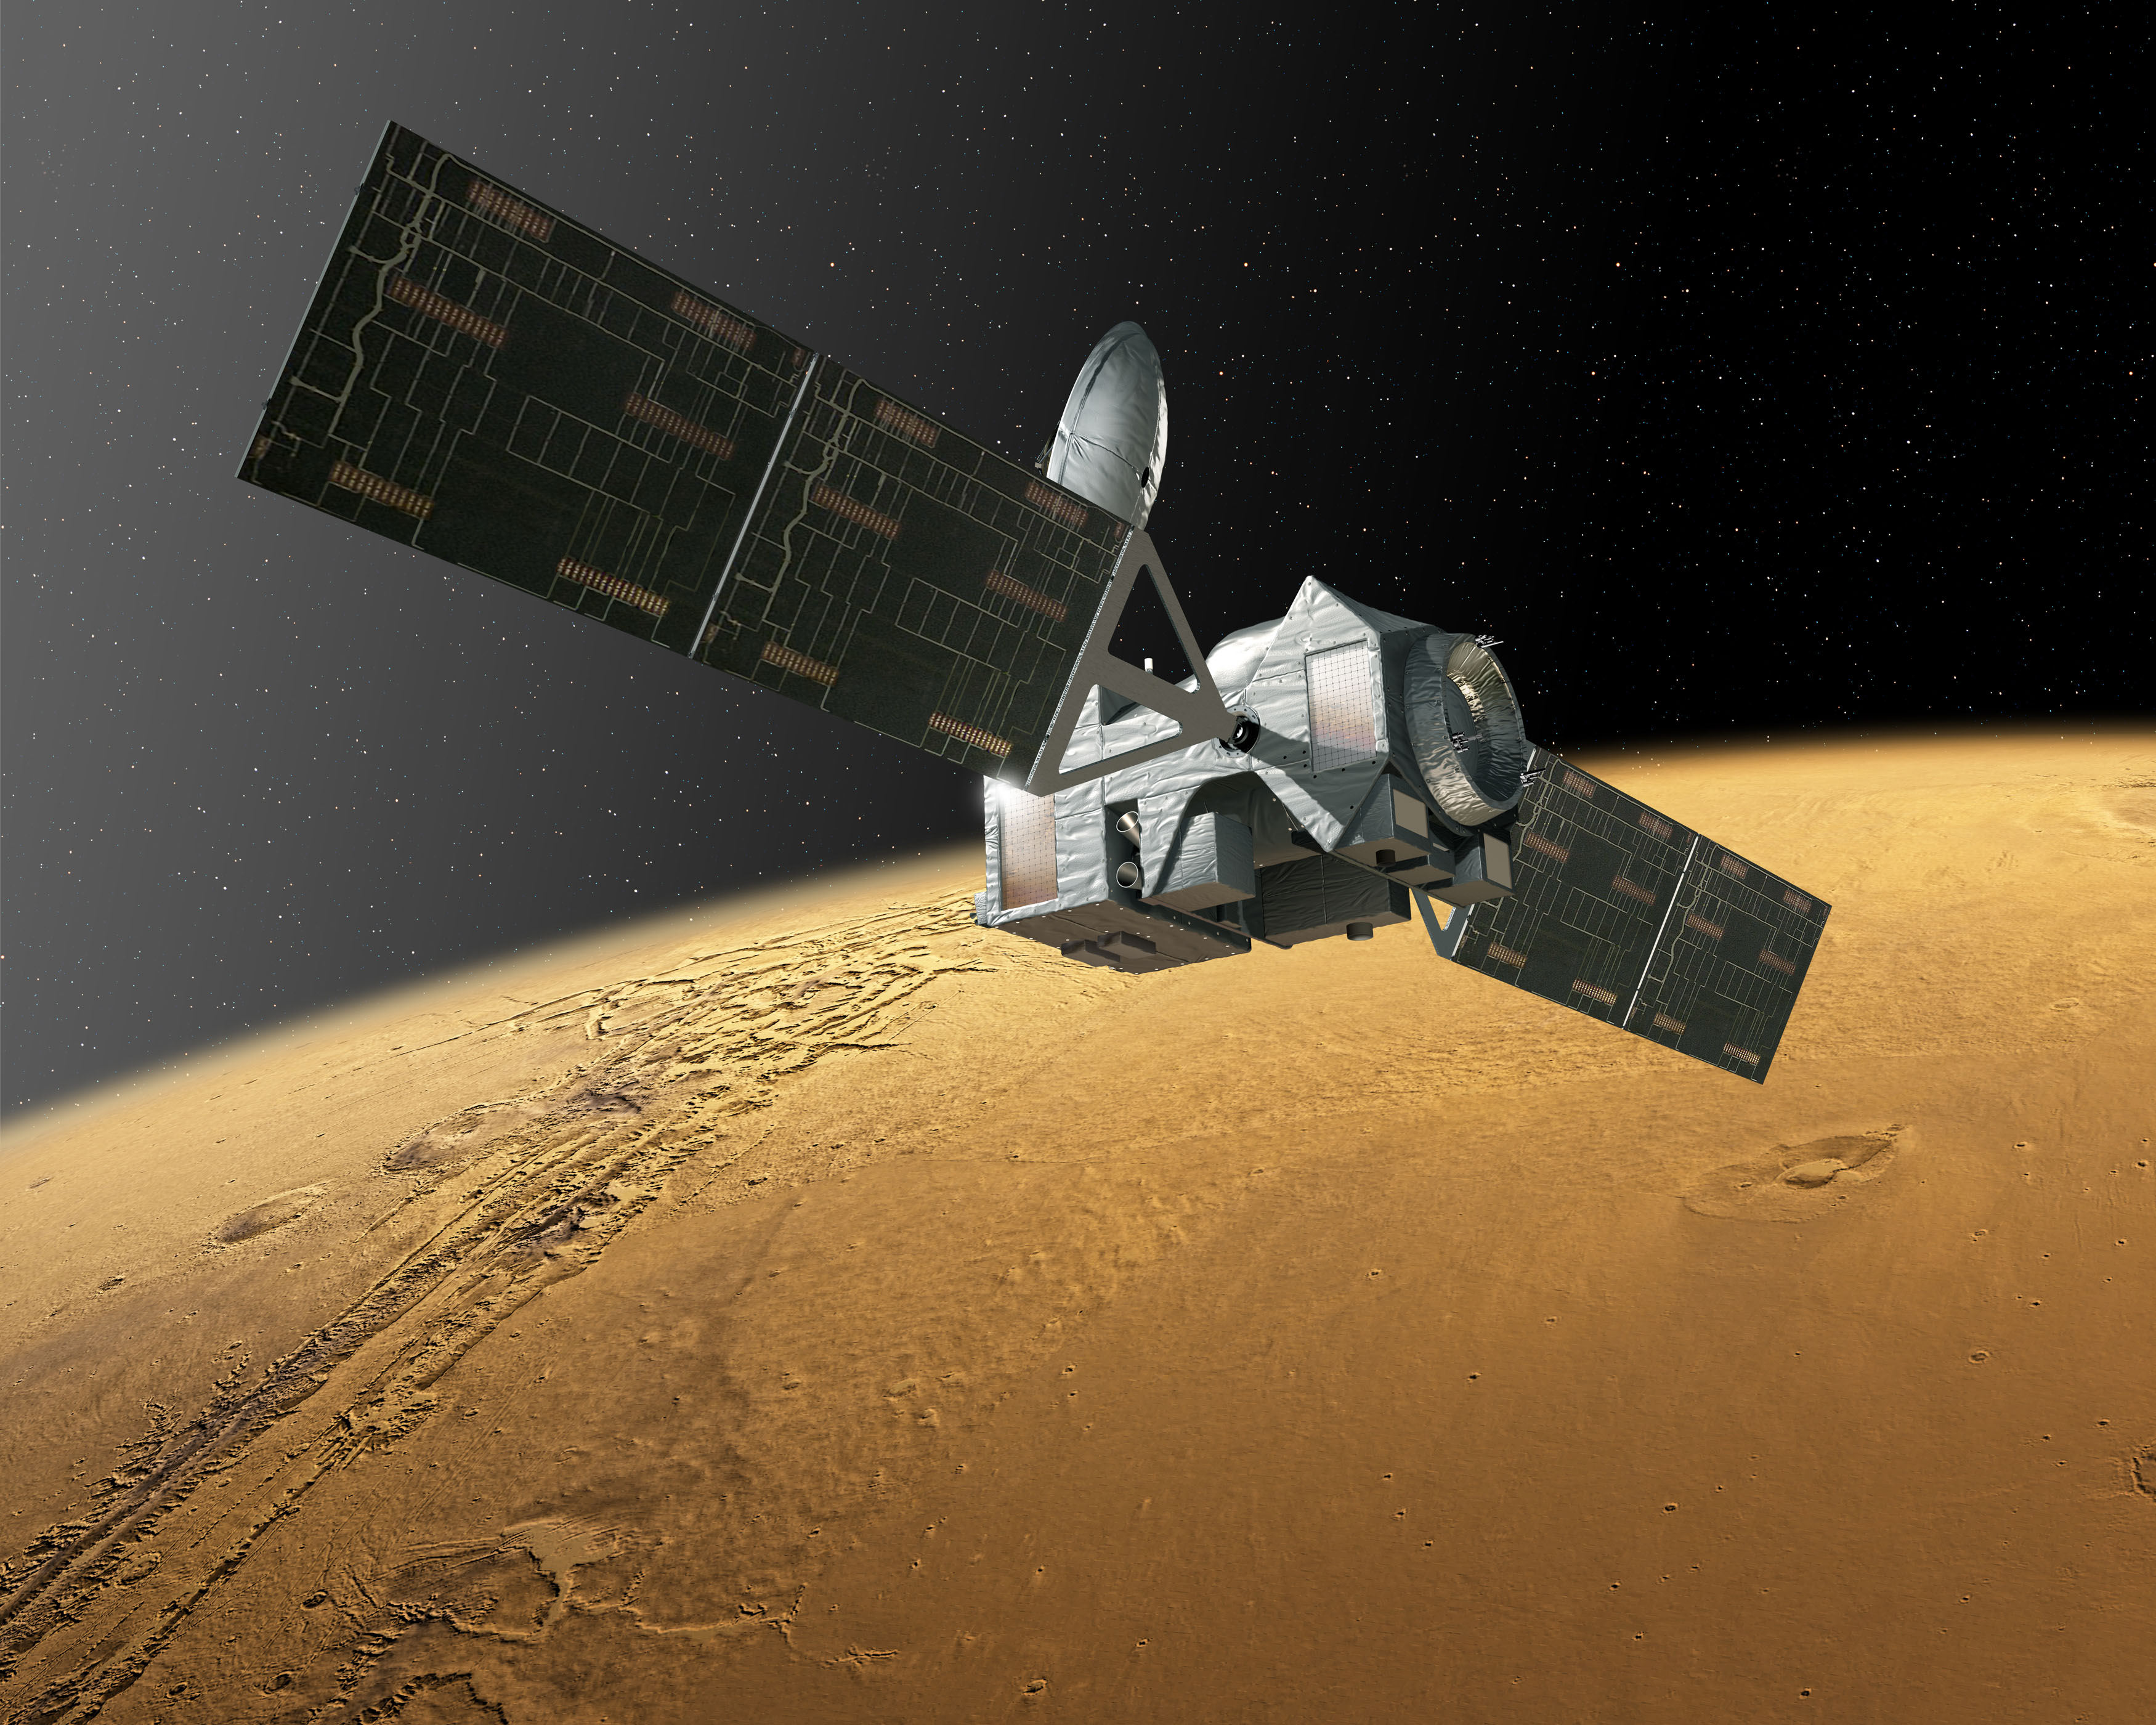 La sonde TGO, en vue d'artiste, sur son orbite elliptique autour de Mars. Avec ses instruments très précis, l'engin étudiera la chimie de l'atmosphère martienne, dont celle, mystérieuse, du méthane. © ESA